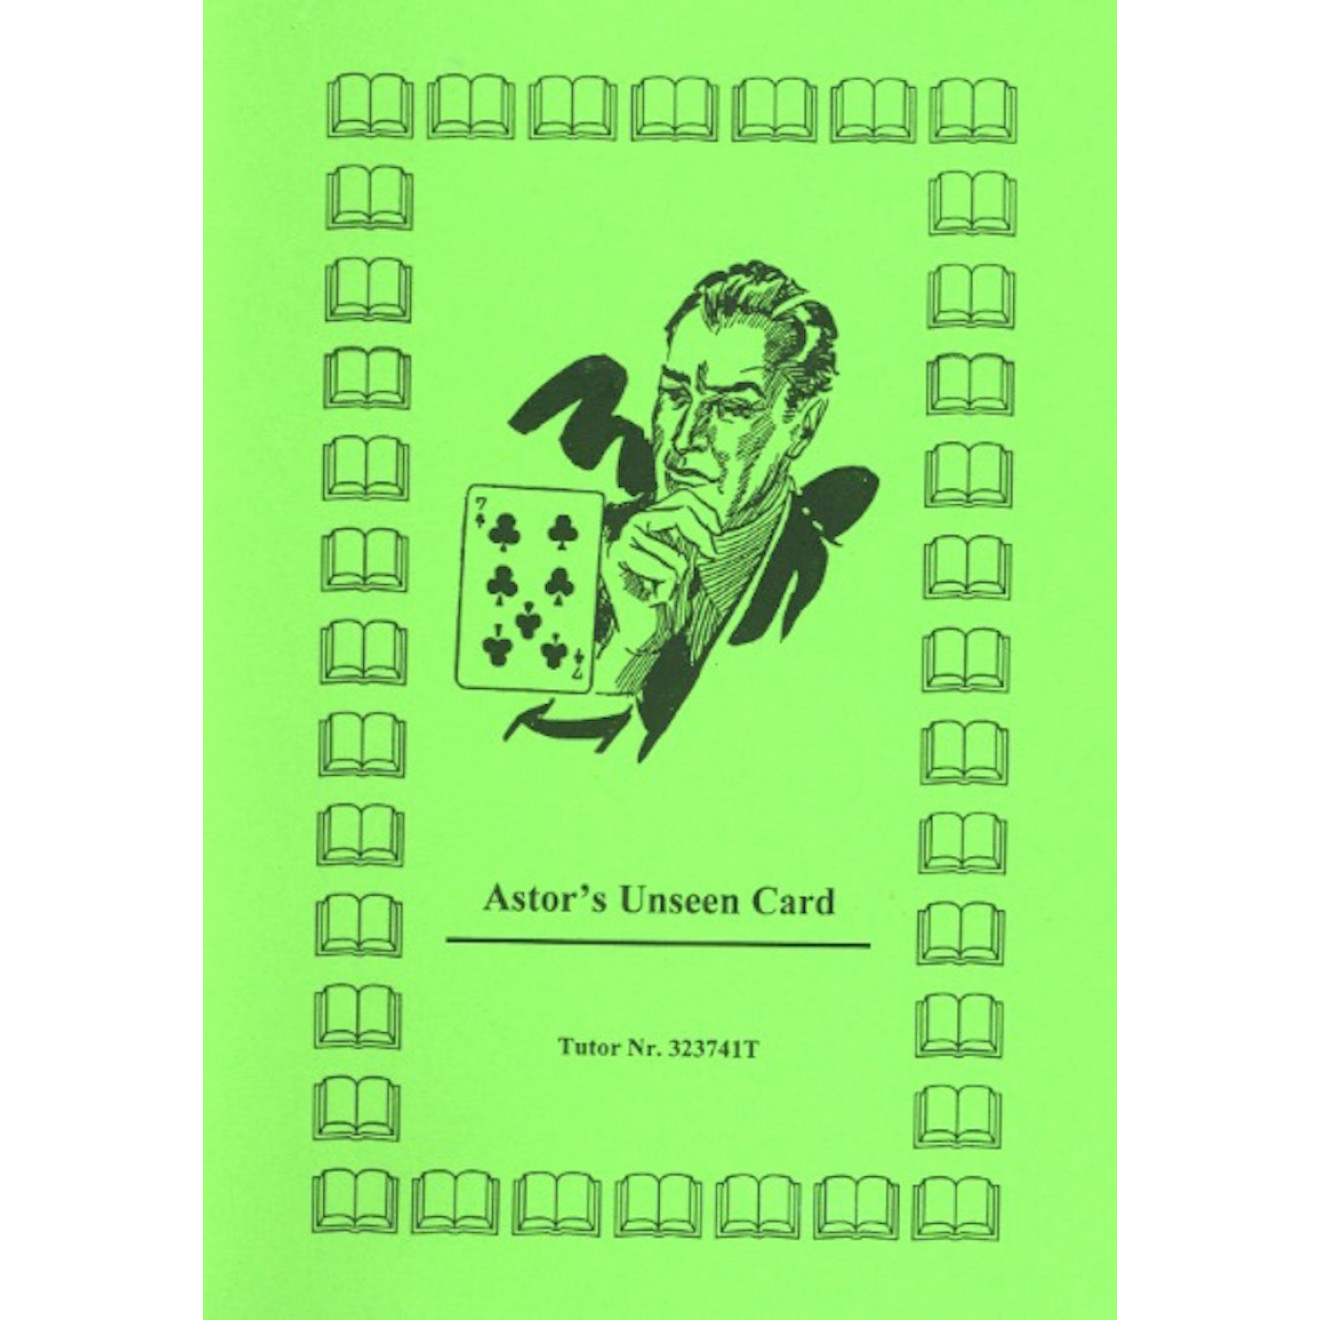 Astor's Unseen Card (gelocht)